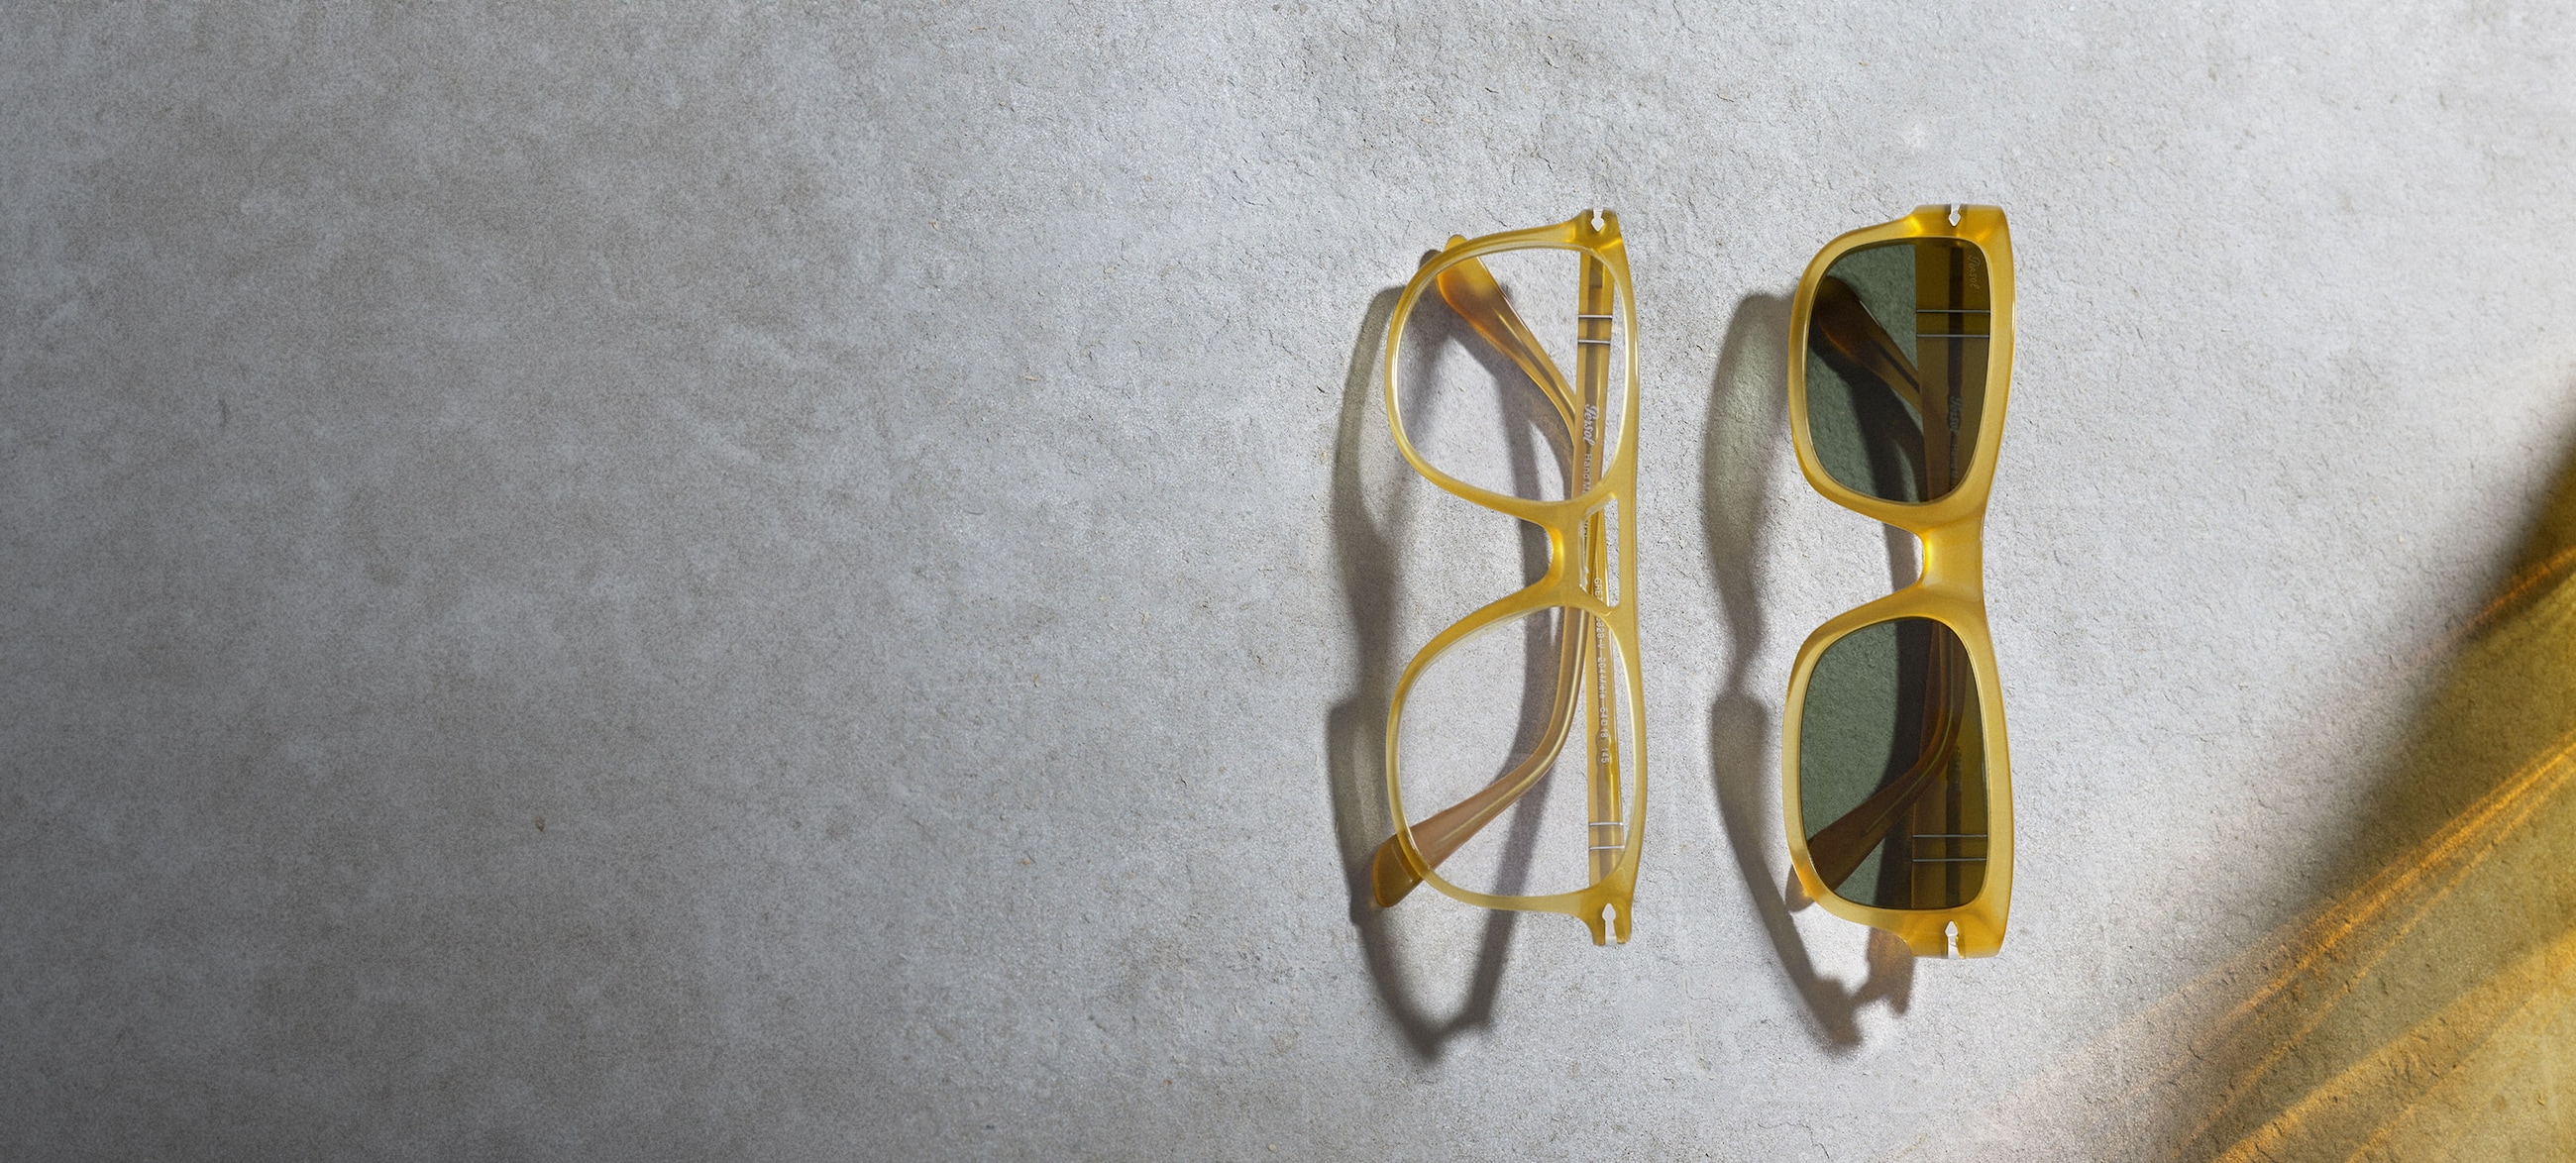 Las gafas de sol más vendidas  LensCrafters®: gafas oftálmicas